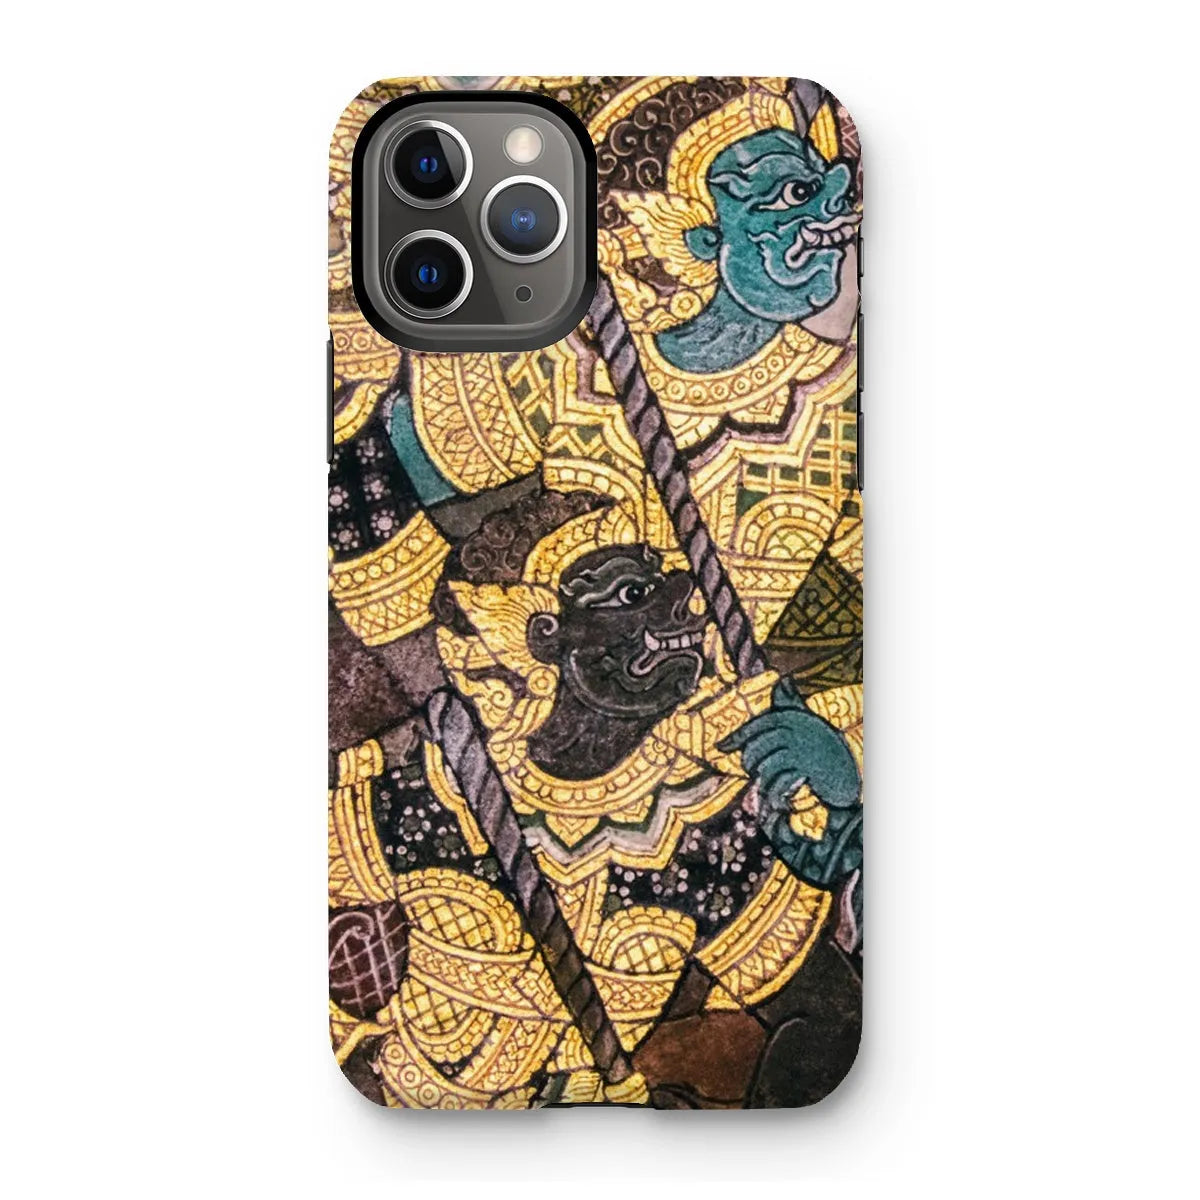 Action Men - Ancient Thai Temple Art Phone Case - Iphone 11 Pro / Matte - Mobile Phone Cases - Aesthetic Art